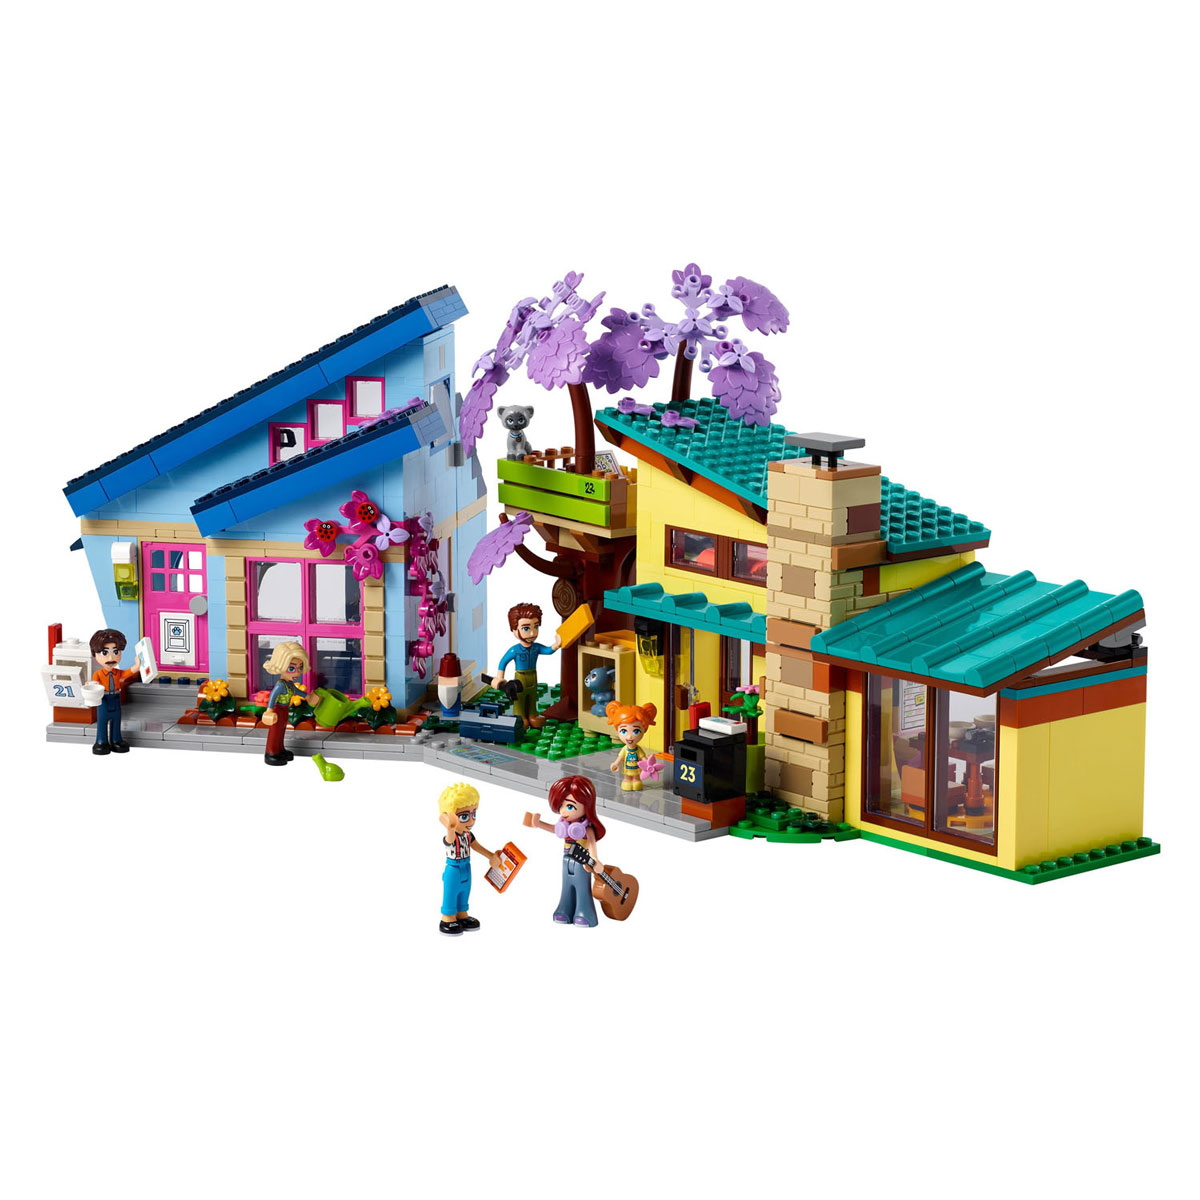 LEGO Friends 42620 Olly en Paisleys Huizen